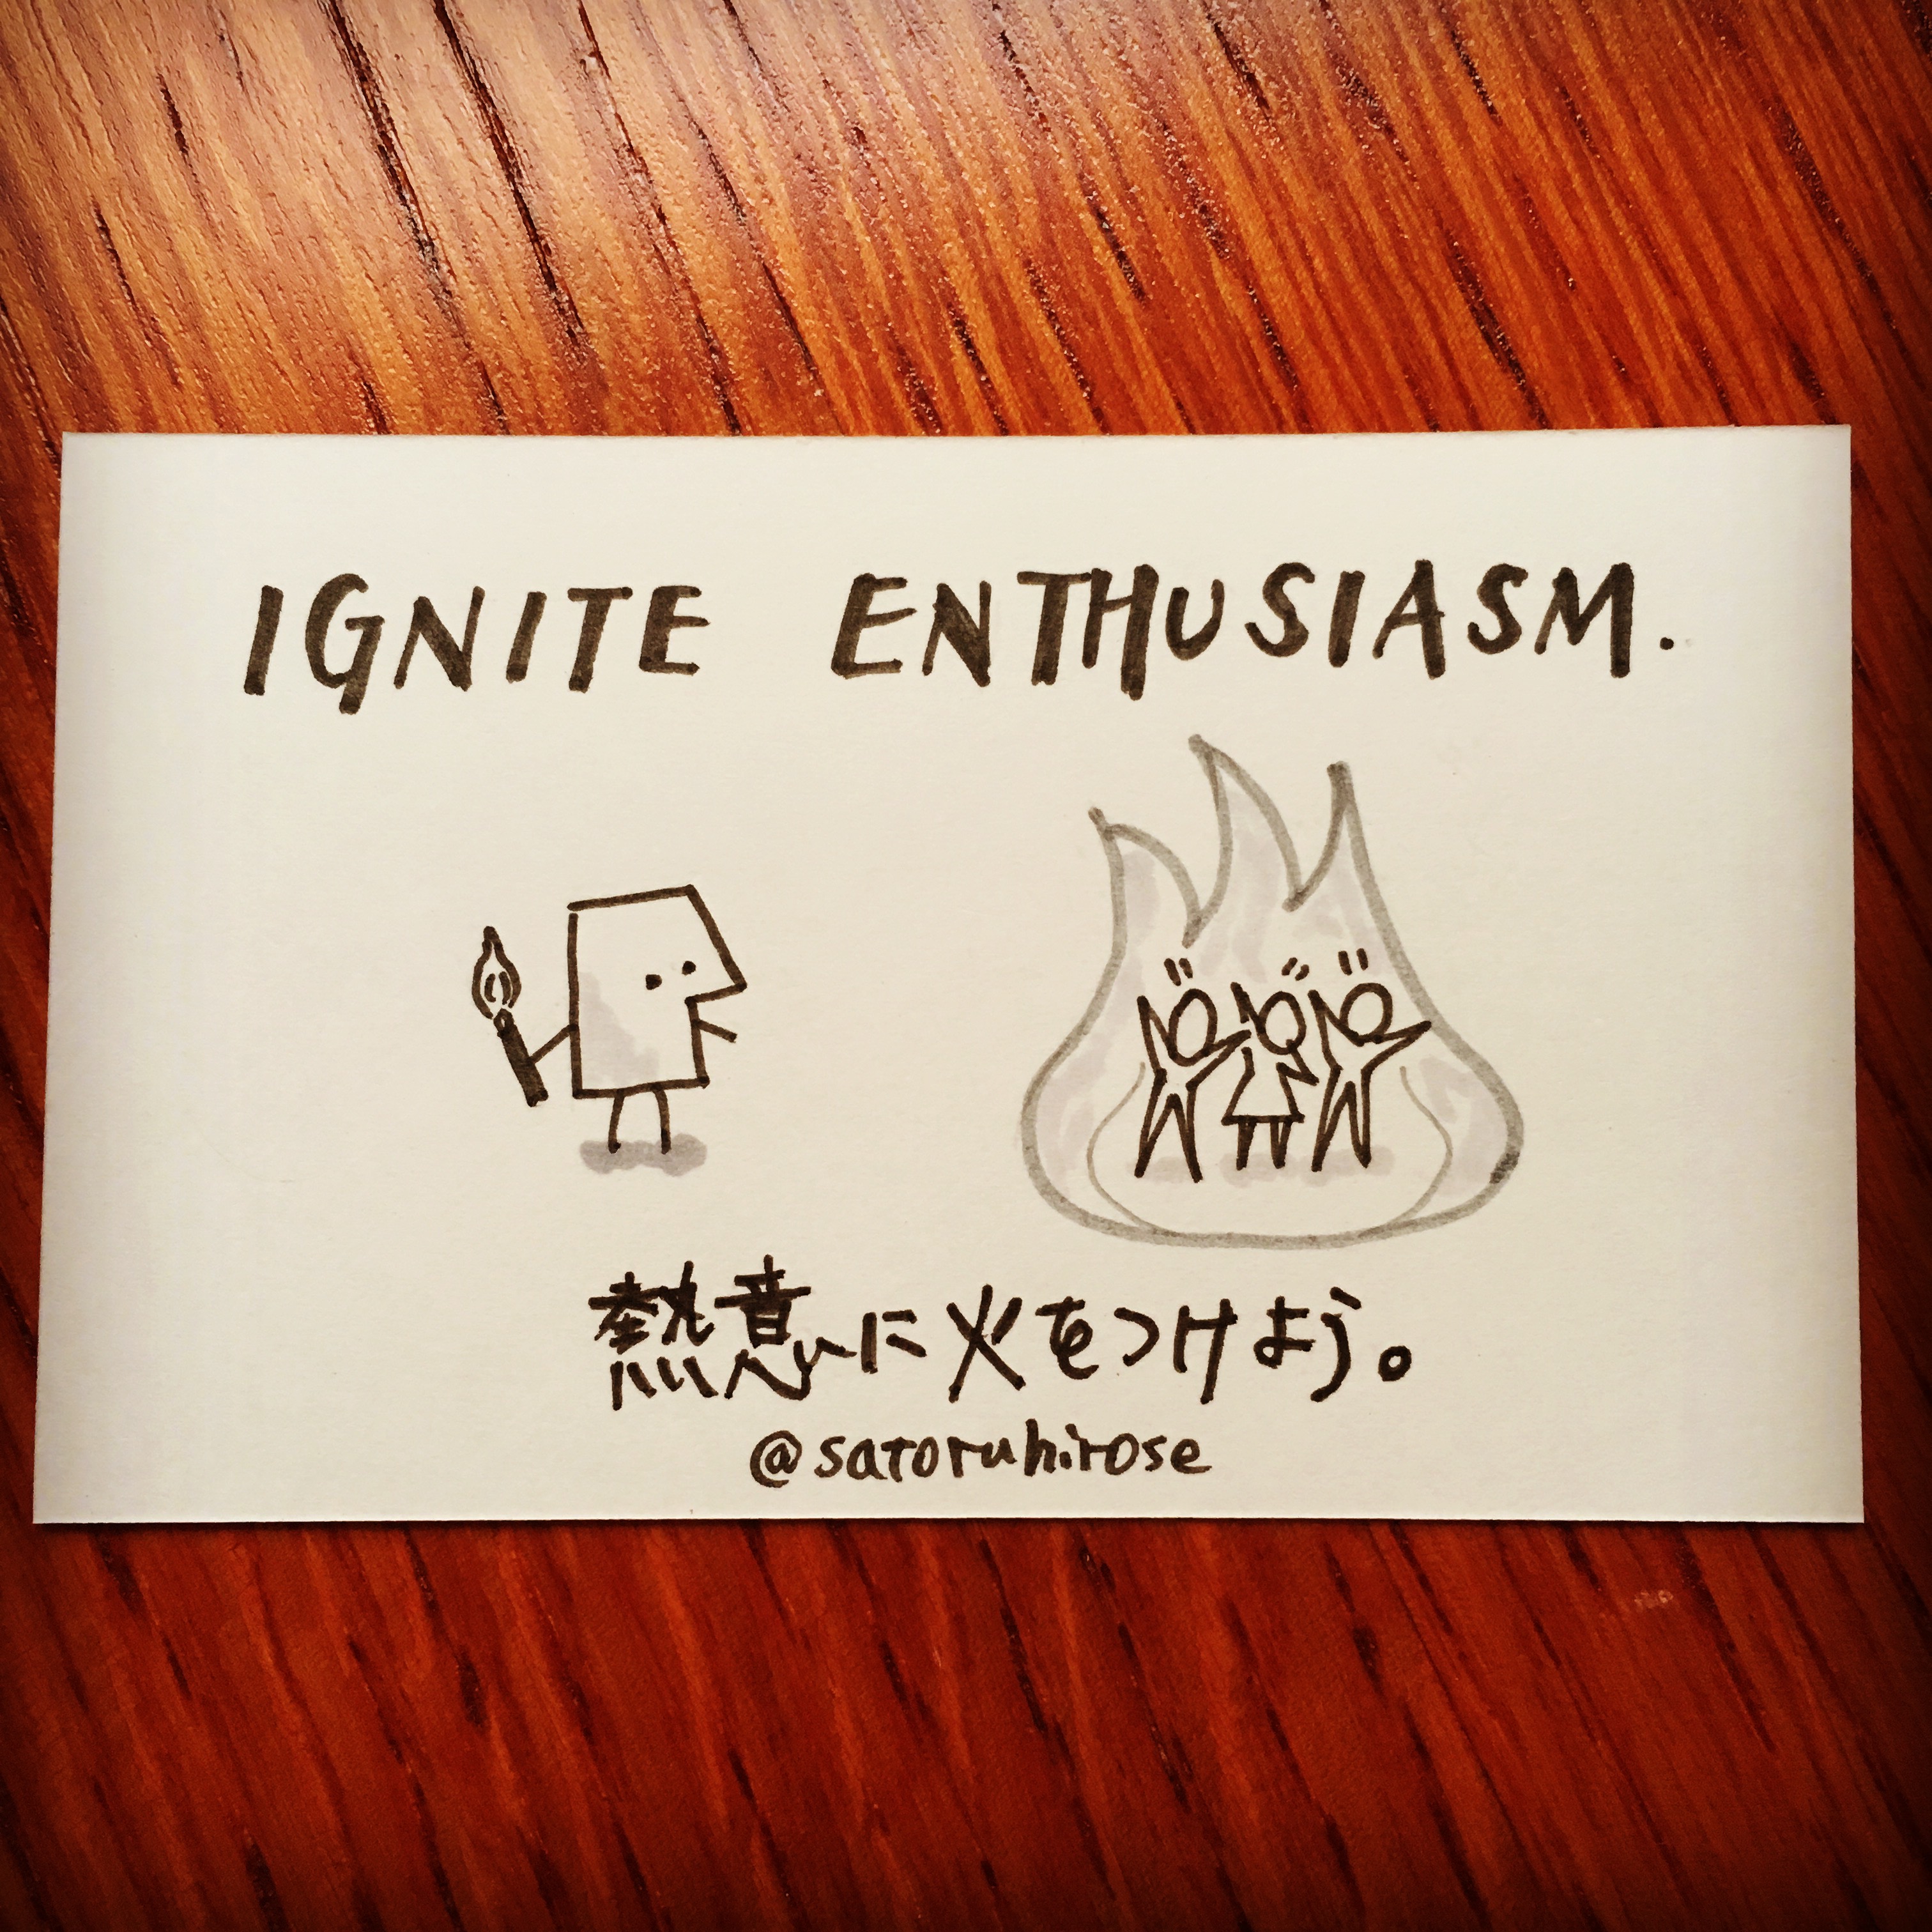 Ignite enthusiasm.